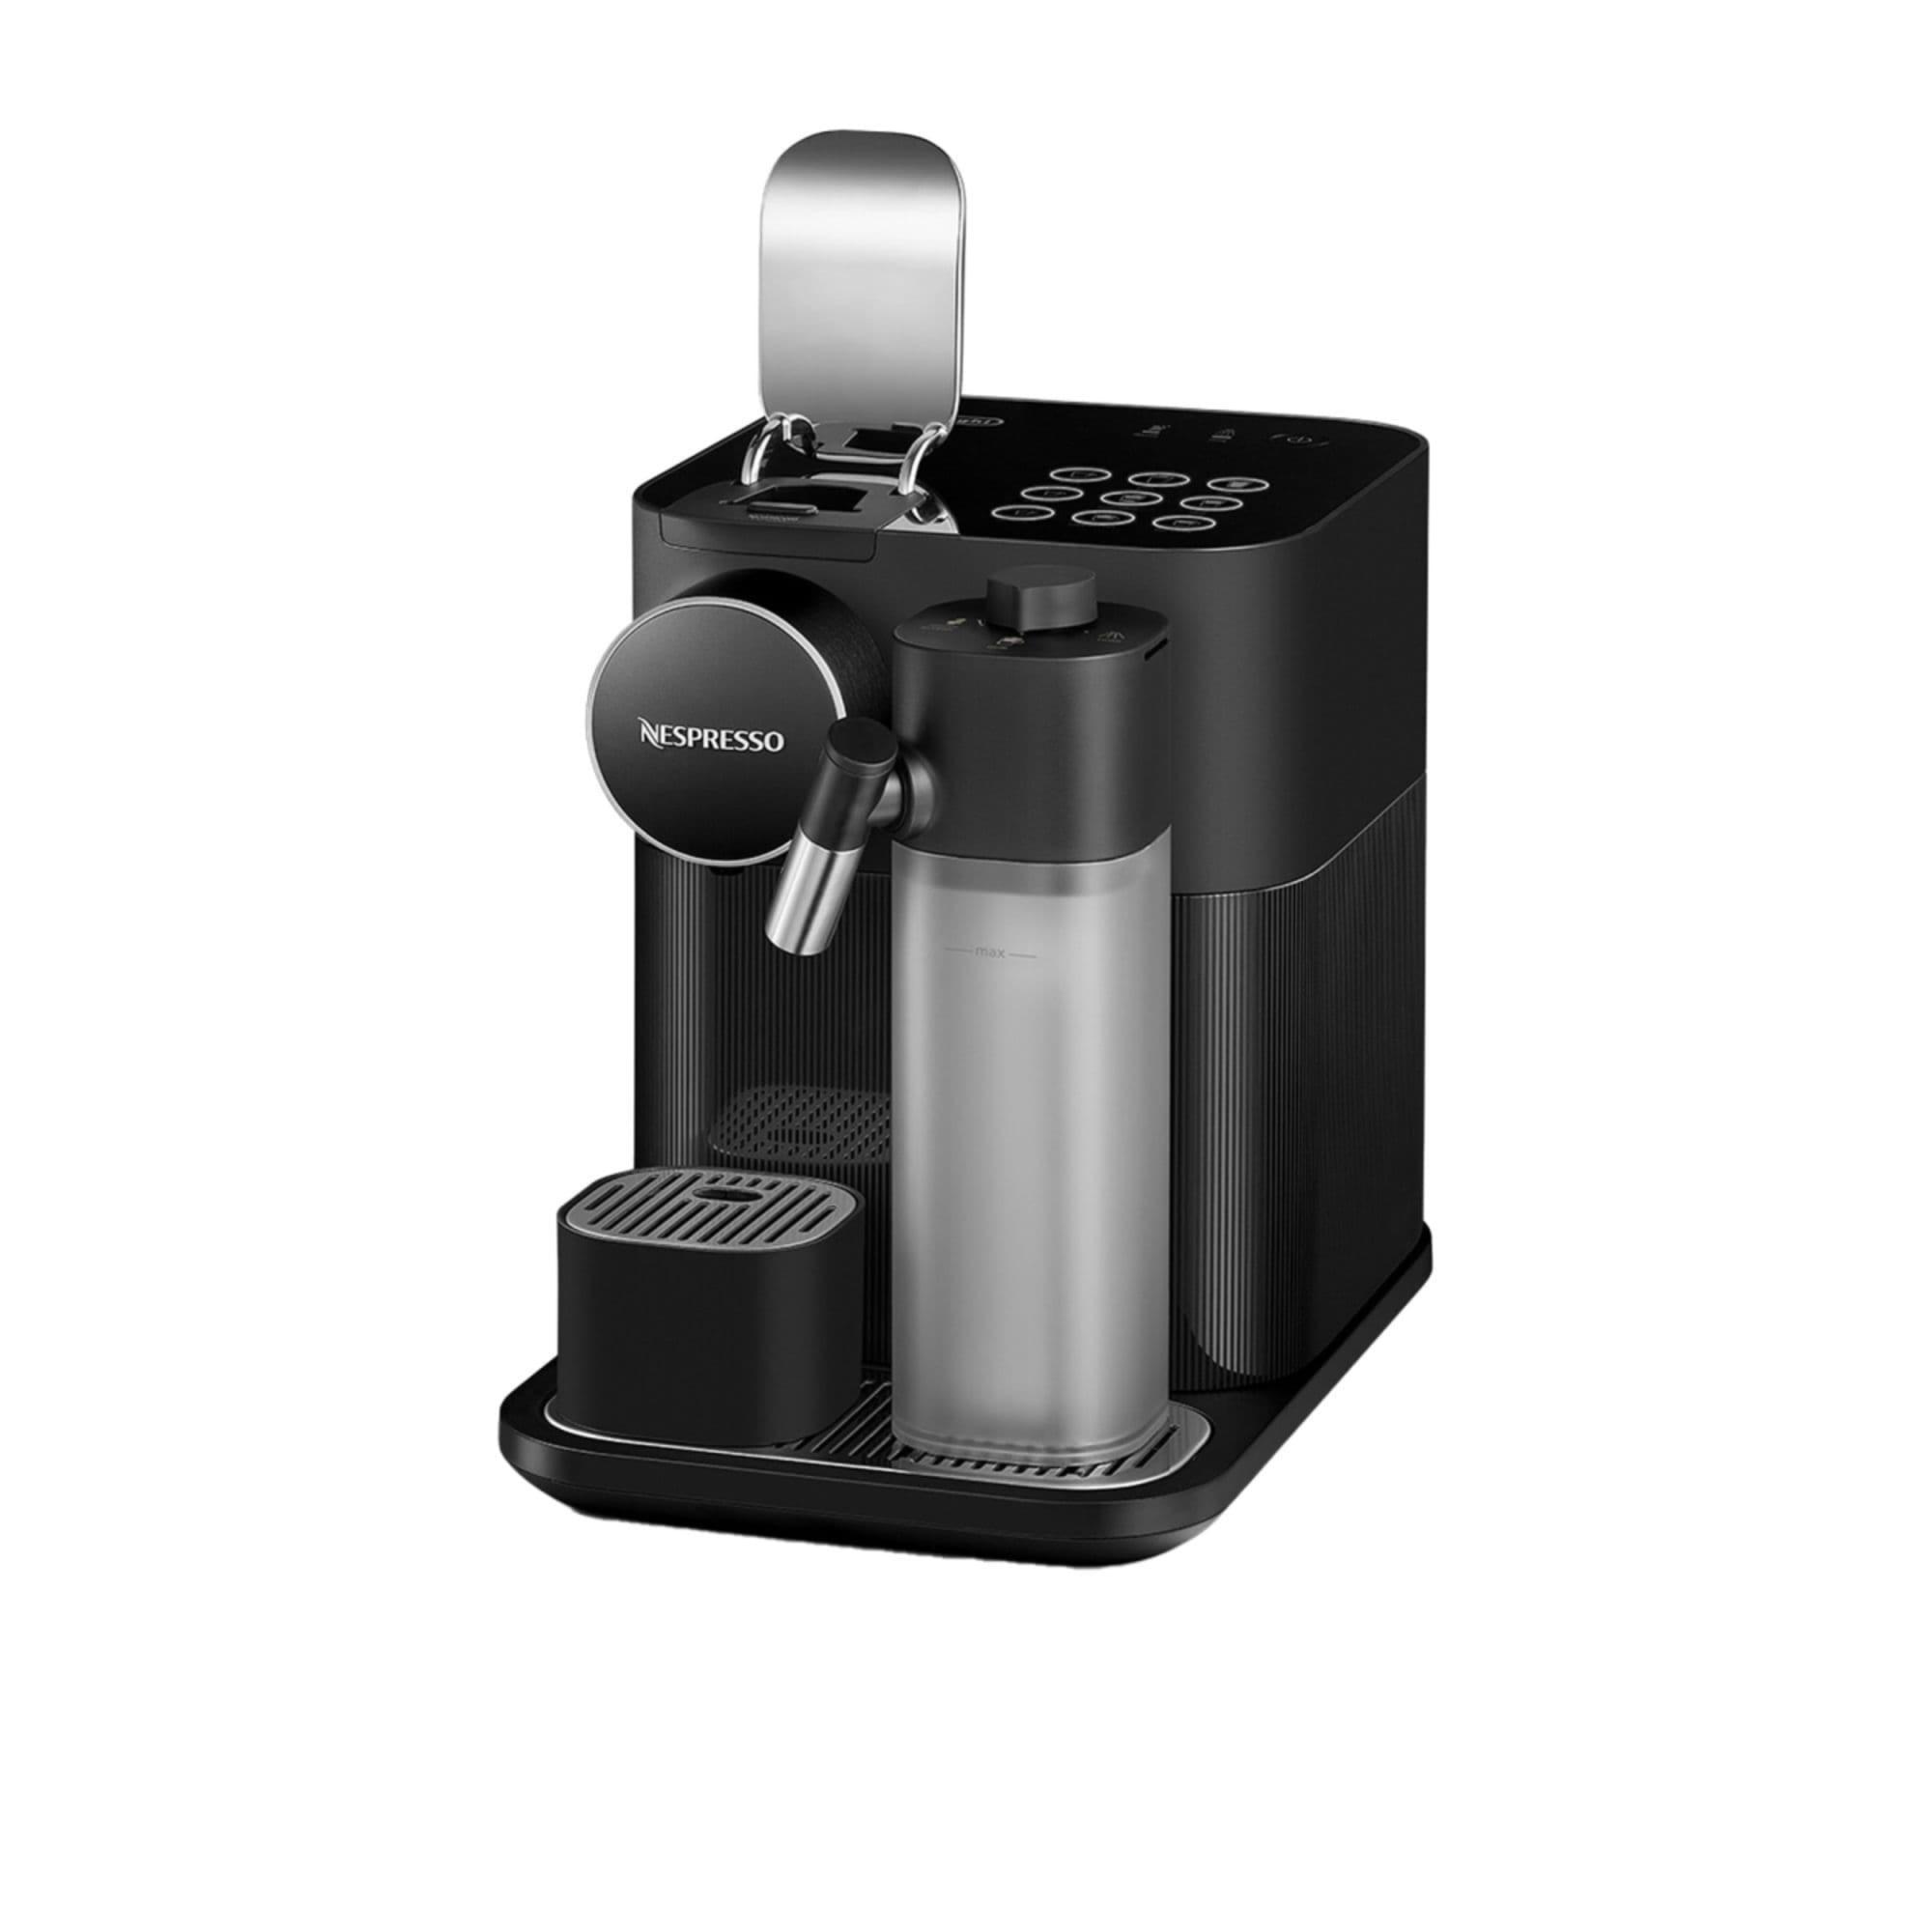 DeLonghi Nespresso Gran Lattisima EN640B Automatic Capsule Coffee Machine Black Image 3